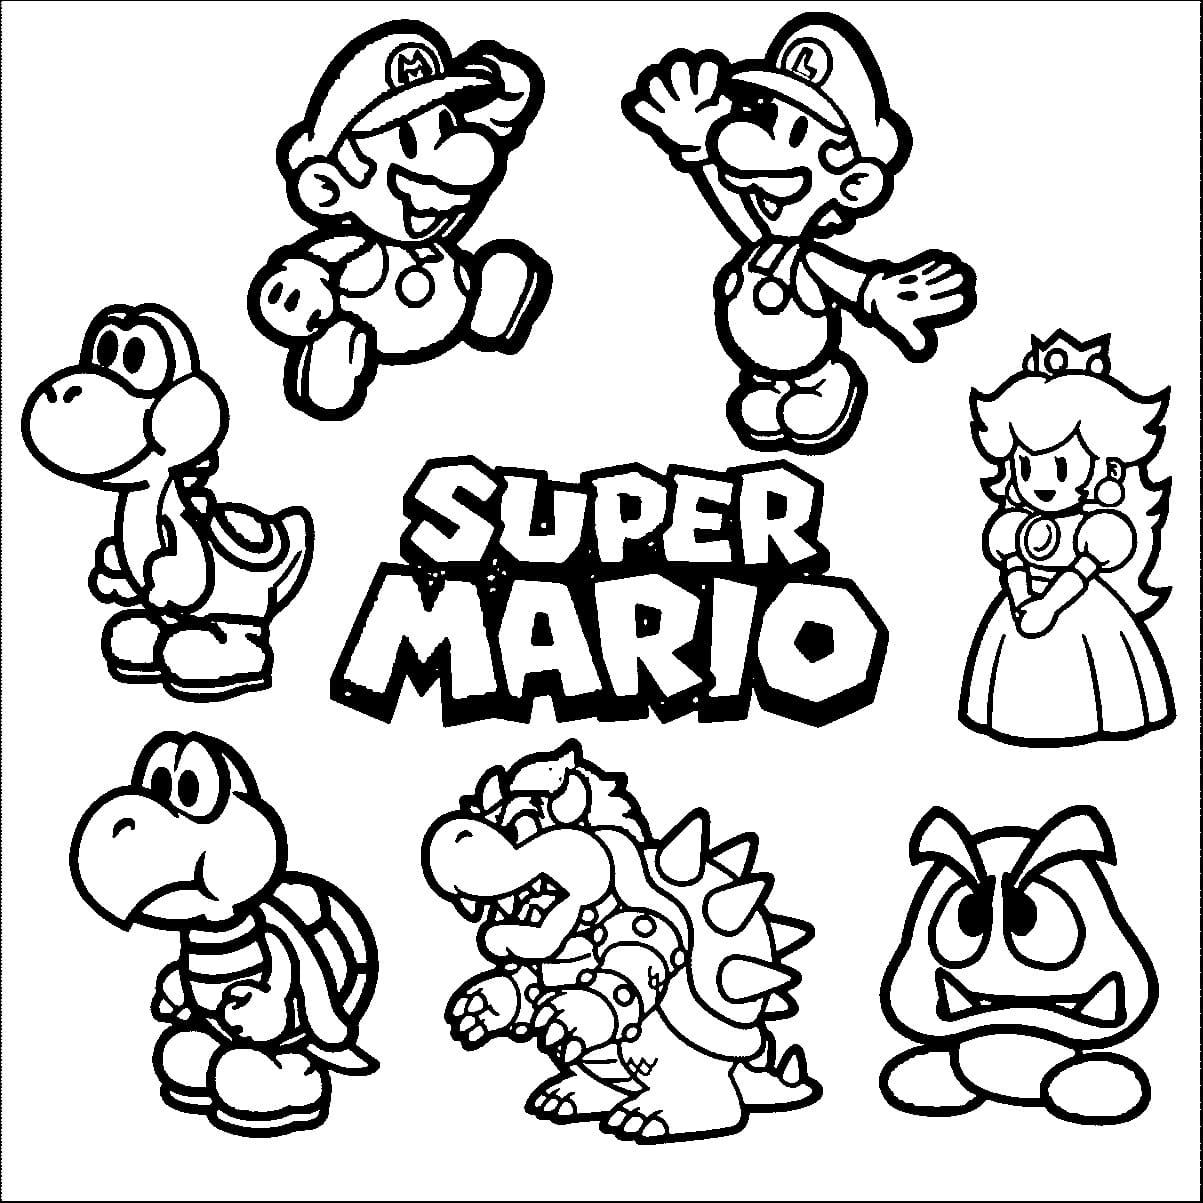 Dibujo 02 de Super Mario para imprimir y colorear